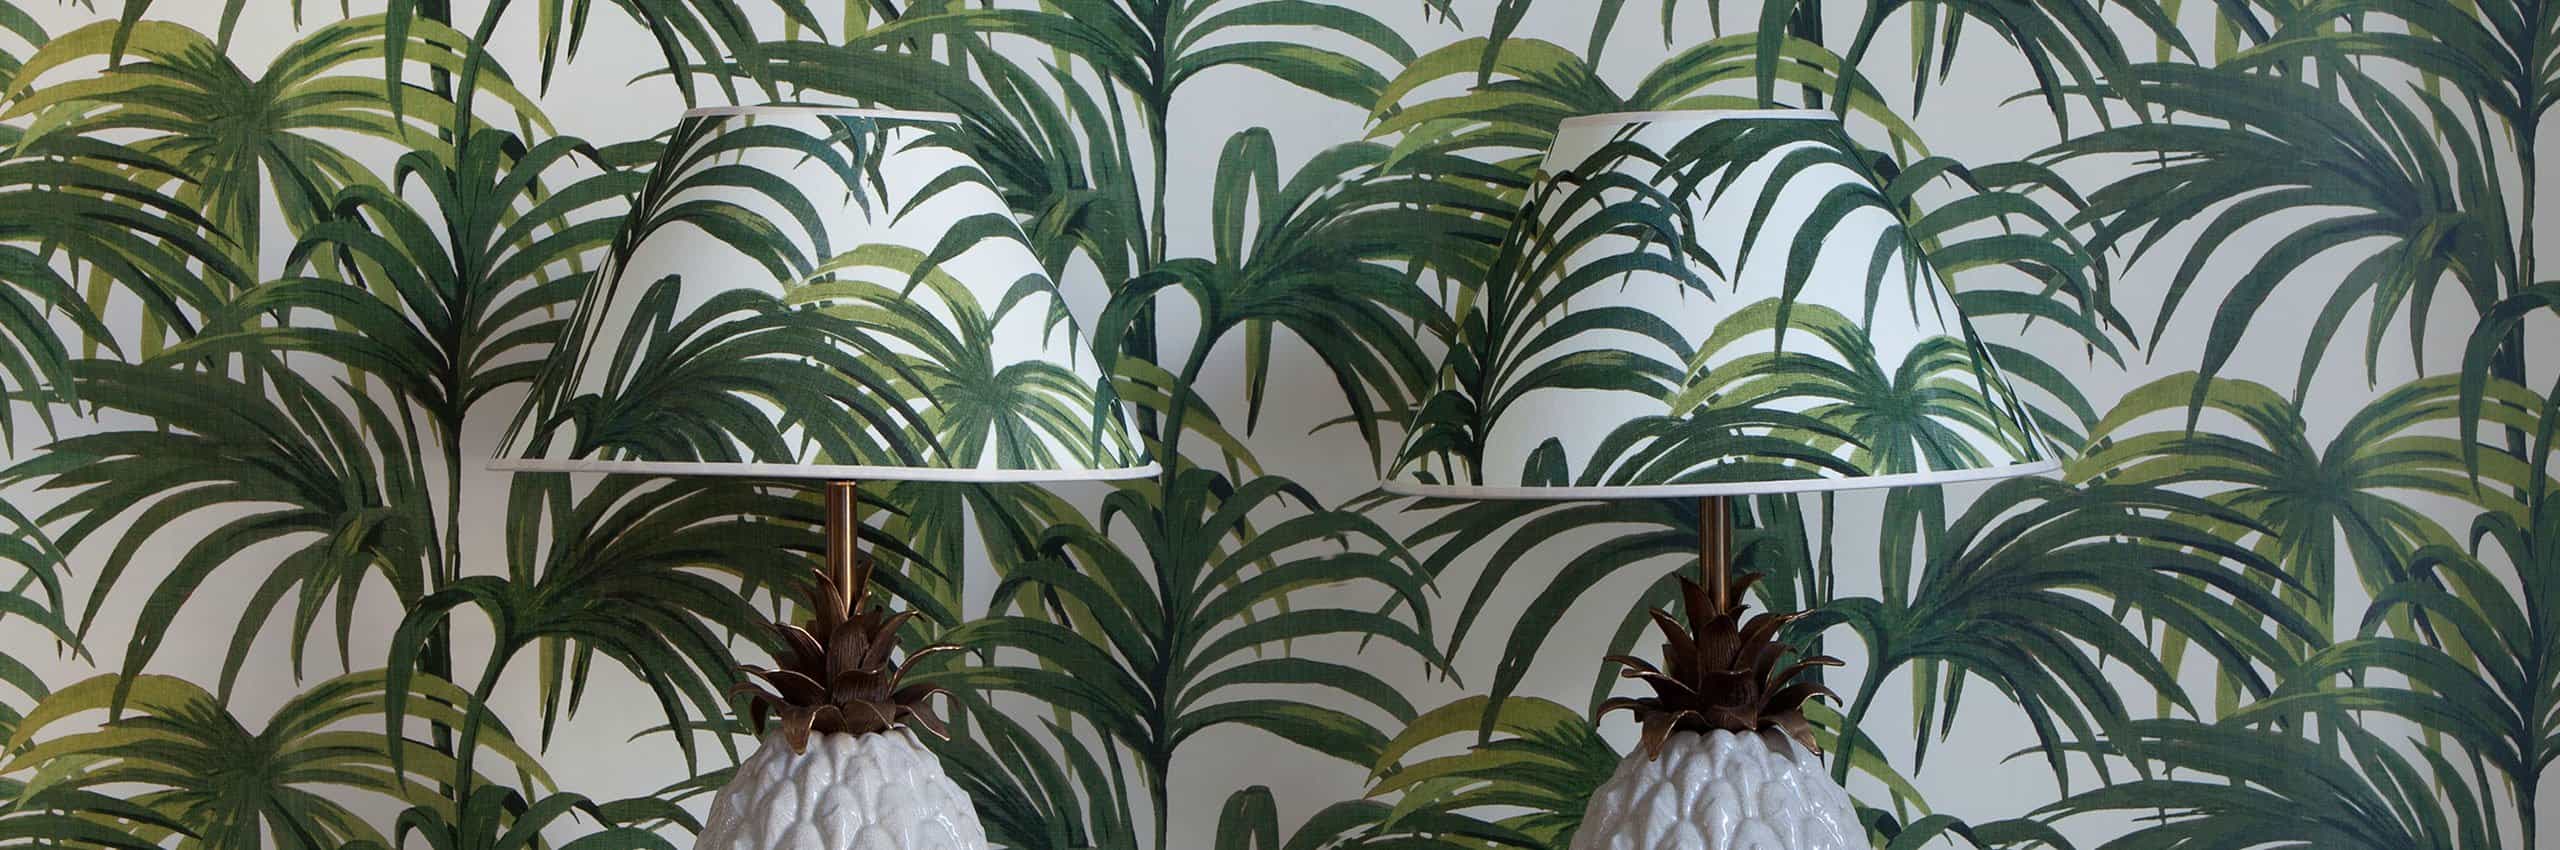 jungle wallpaper uk,plant,houseplant,terrestrial plant,flower,flowering plant